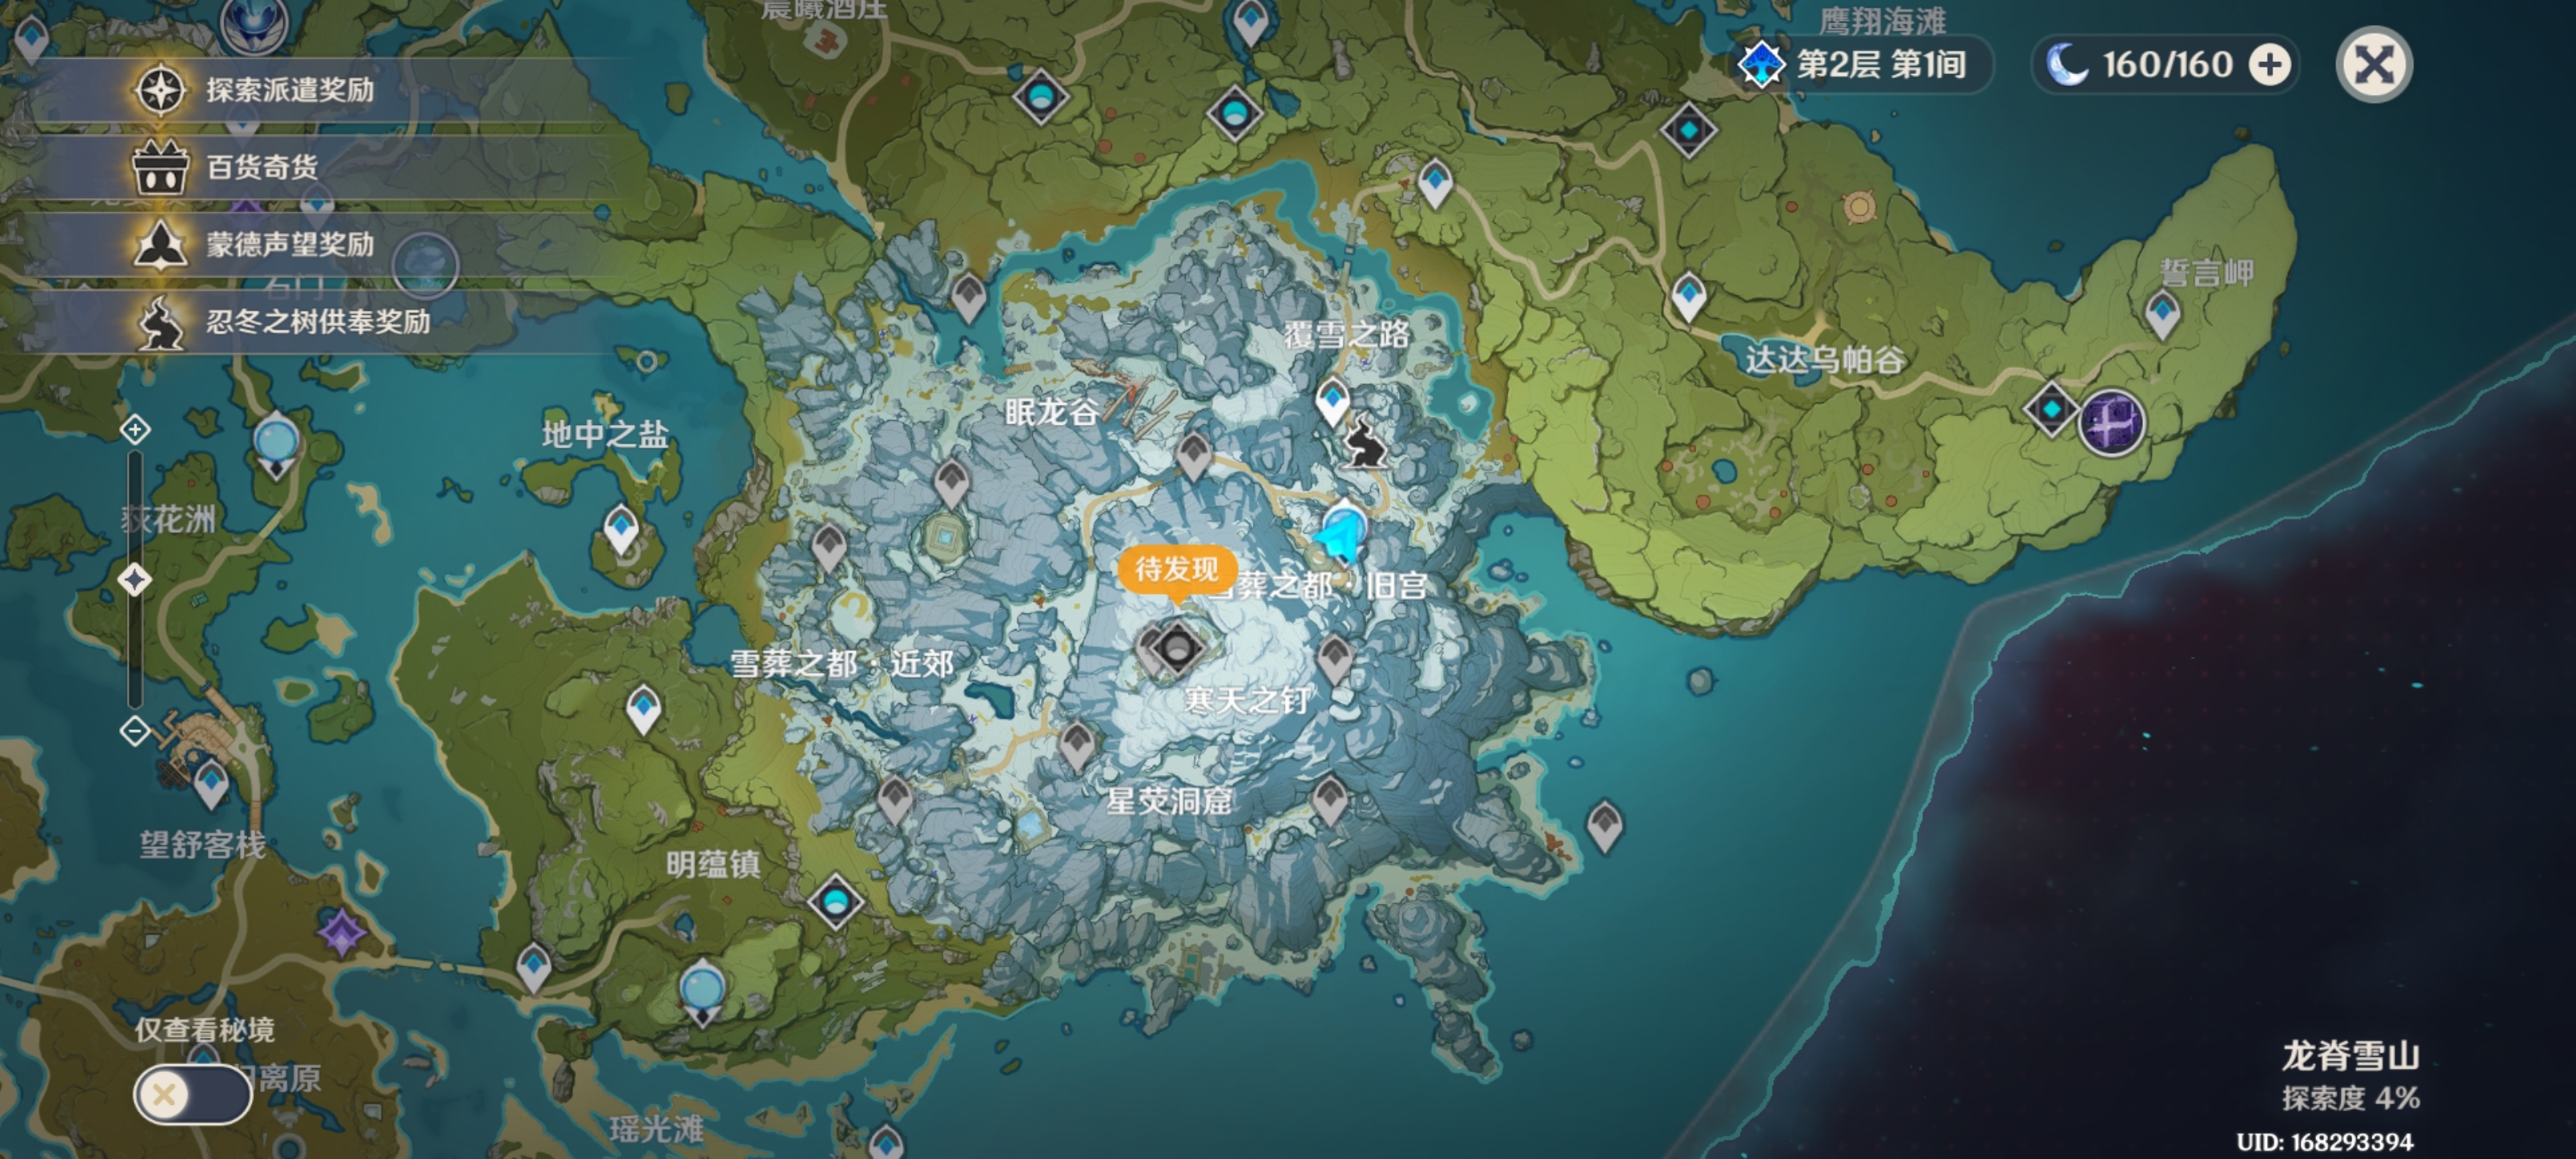 开地图算是本游戏最基础的玩法,但雪山的难度明显比蒙德和璃月高很多